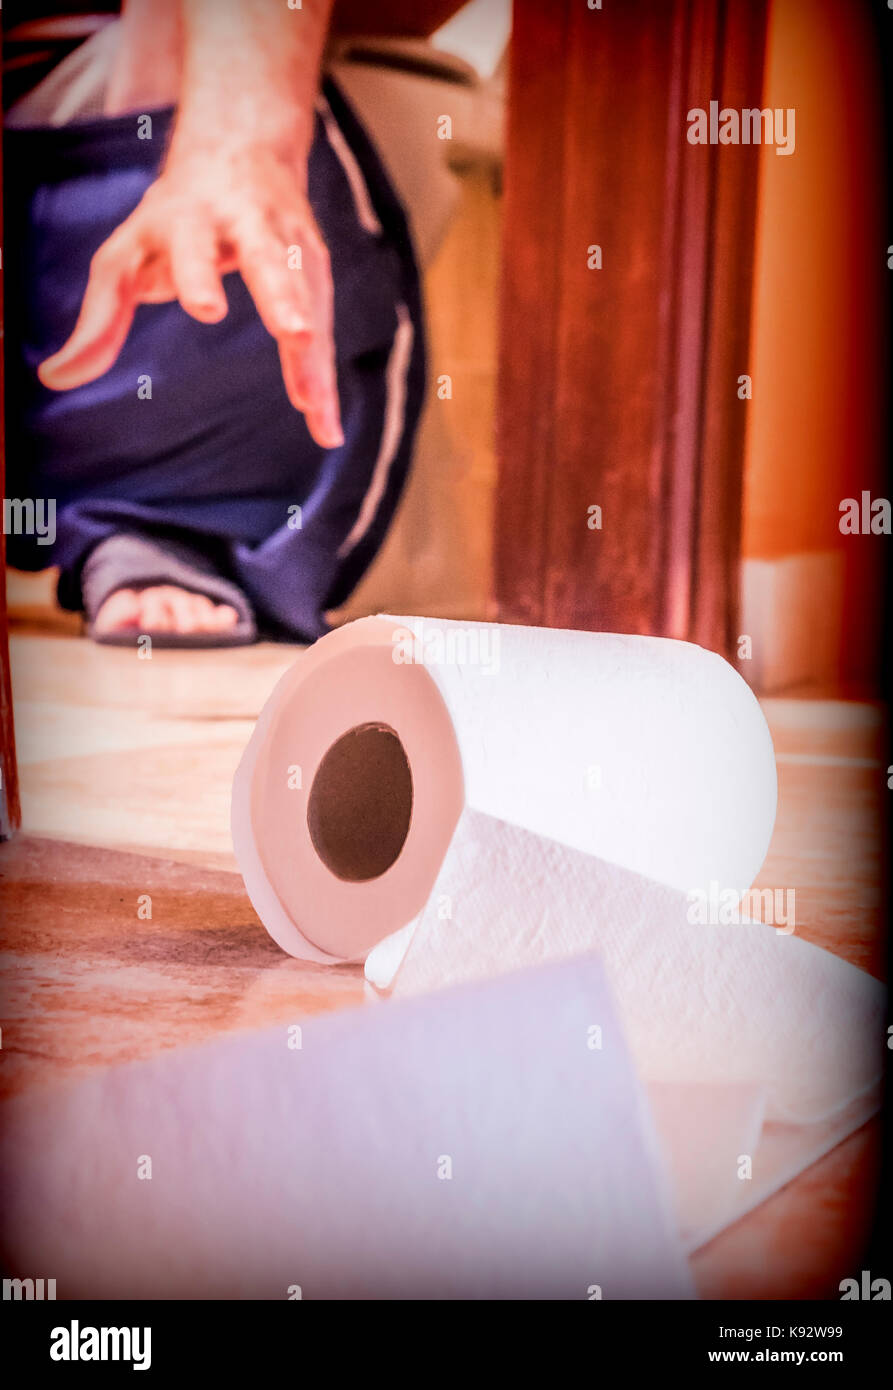 Uomo seduto in bagno provato a prendere il rotolo di carta igienica, immagine concettuale Foto Stock